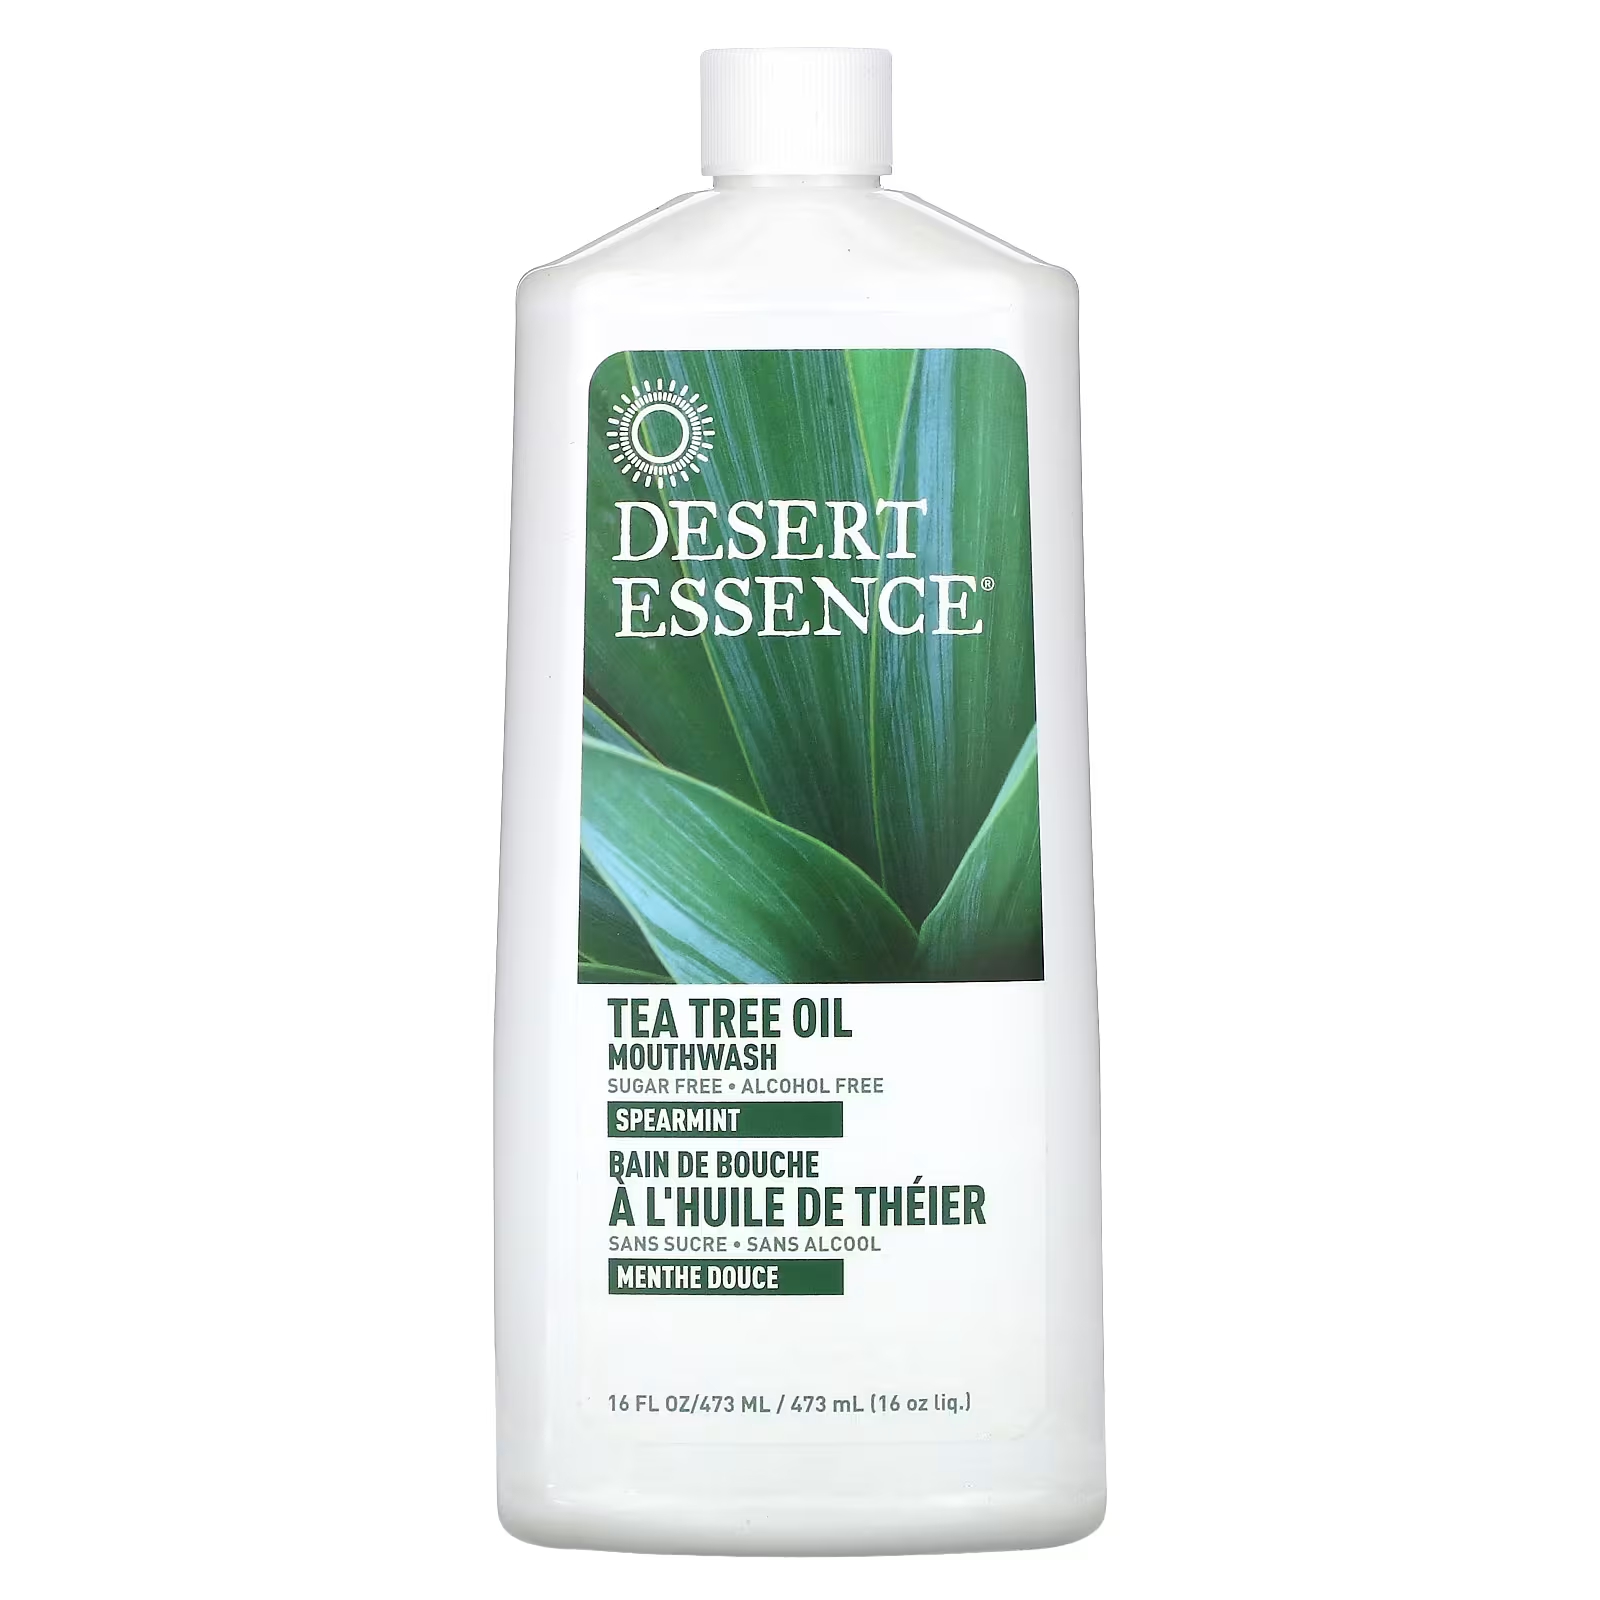 Масло чайного дерева Desert Essence для полоскания рта, 473 мл desert essence foaming hand soap pods refills tea tree oil